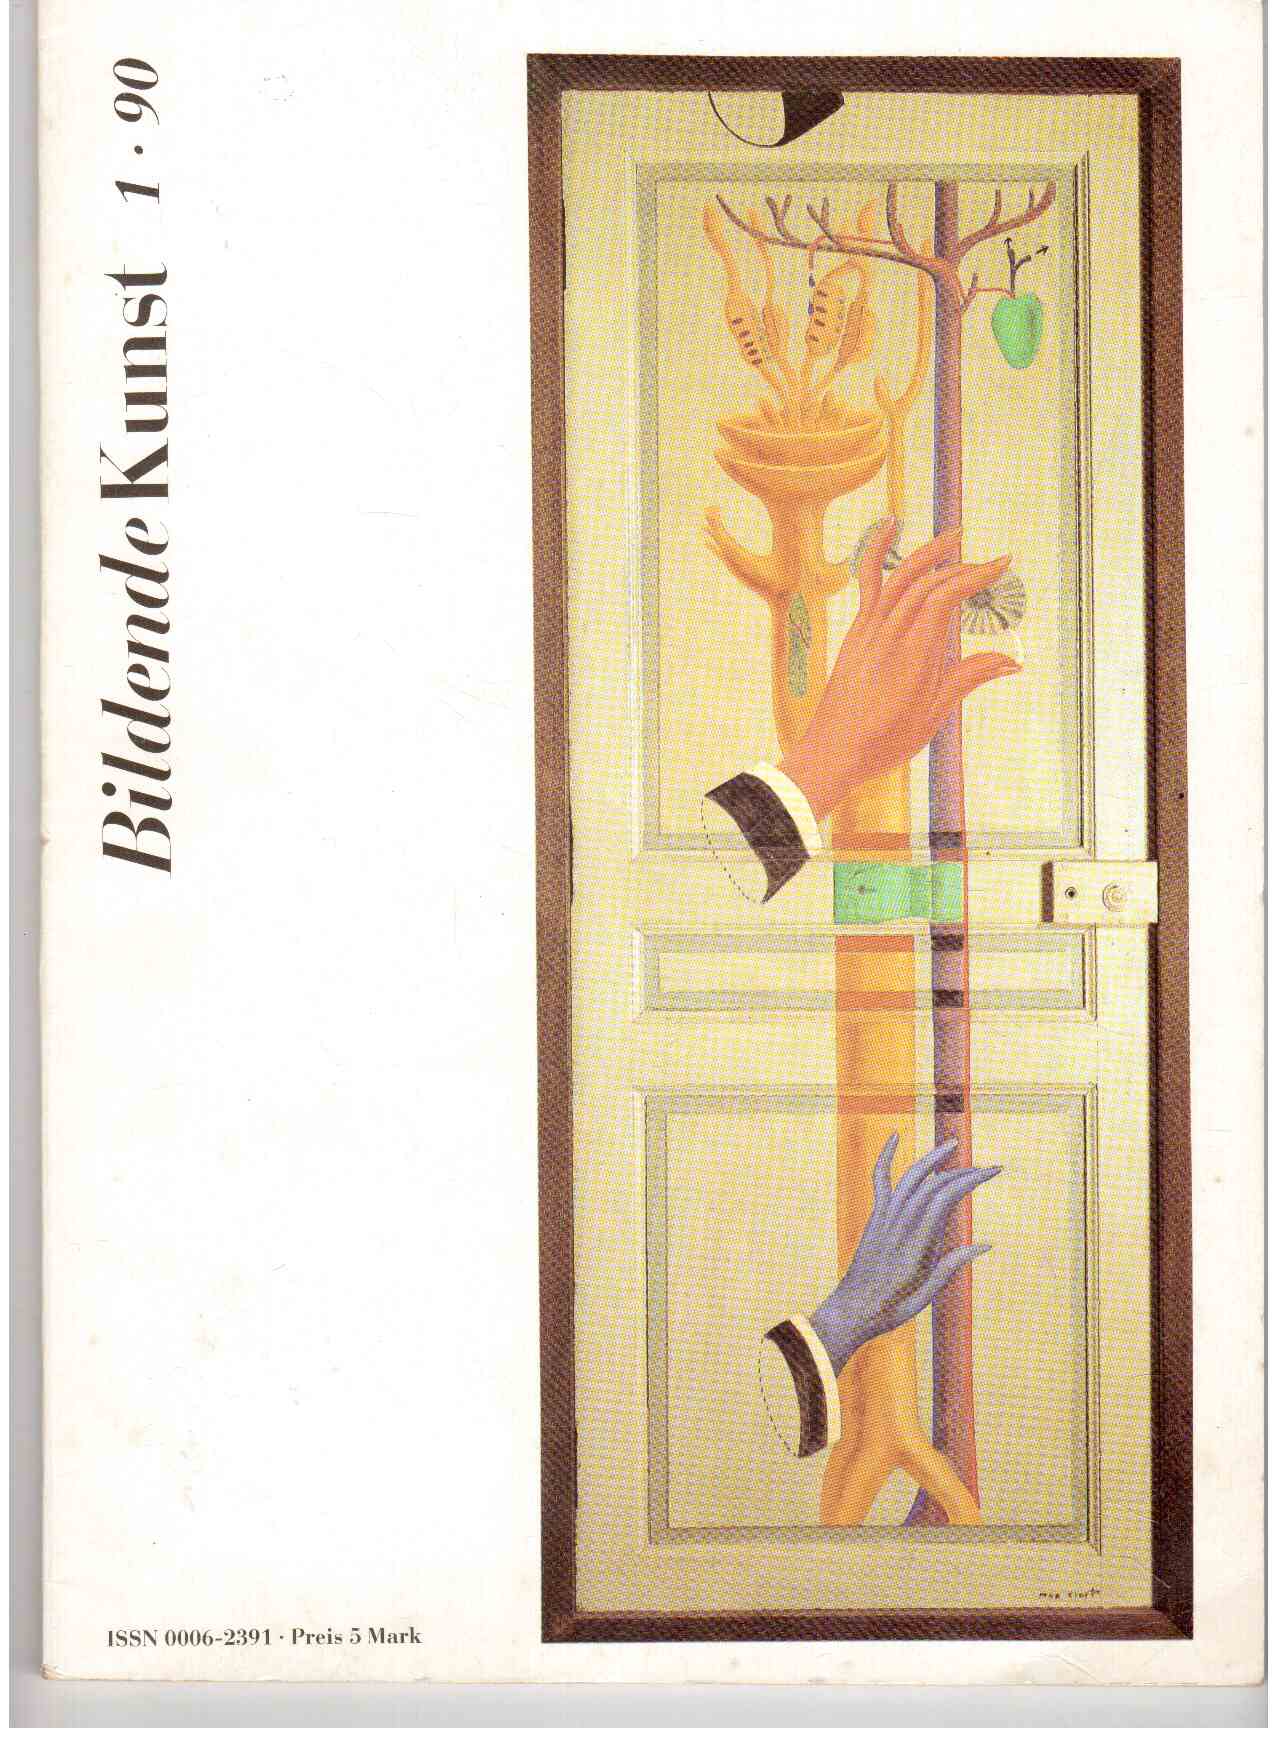 Bildende Kunst Heft 1-12 (1990)